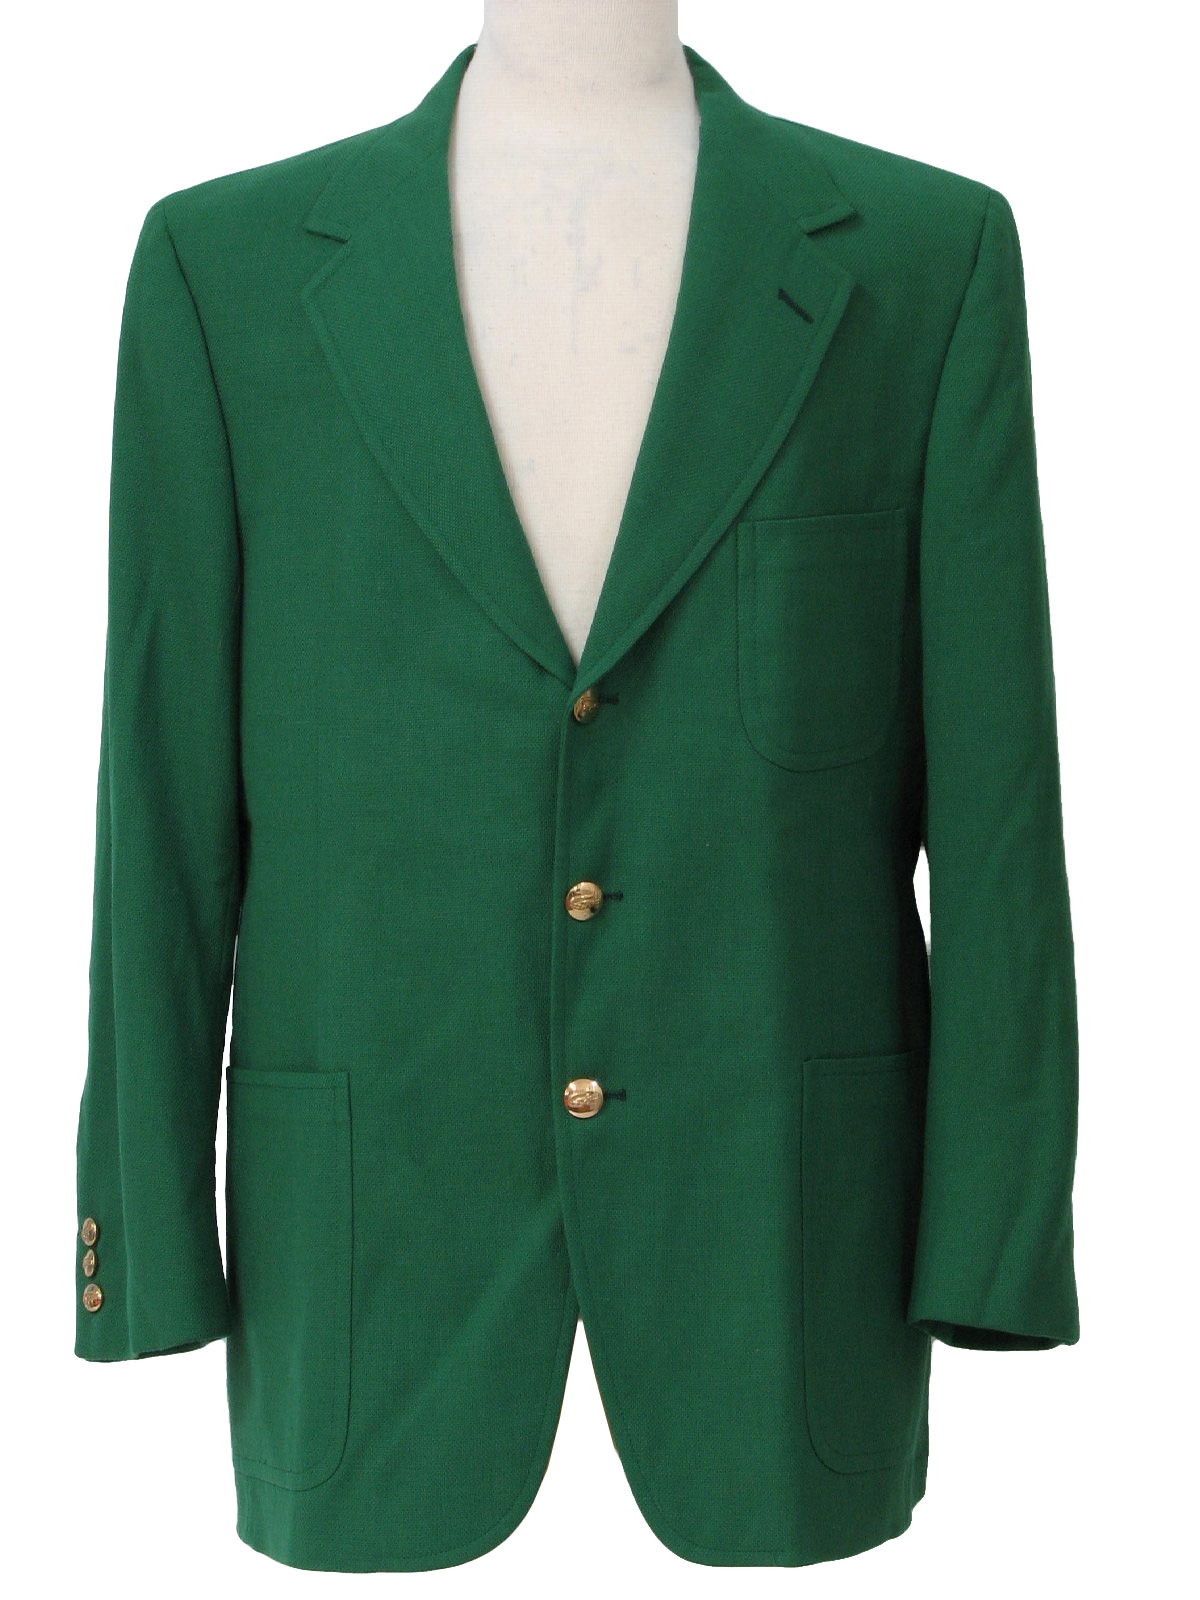 Green Sports Jacket Blazer - JacketIn